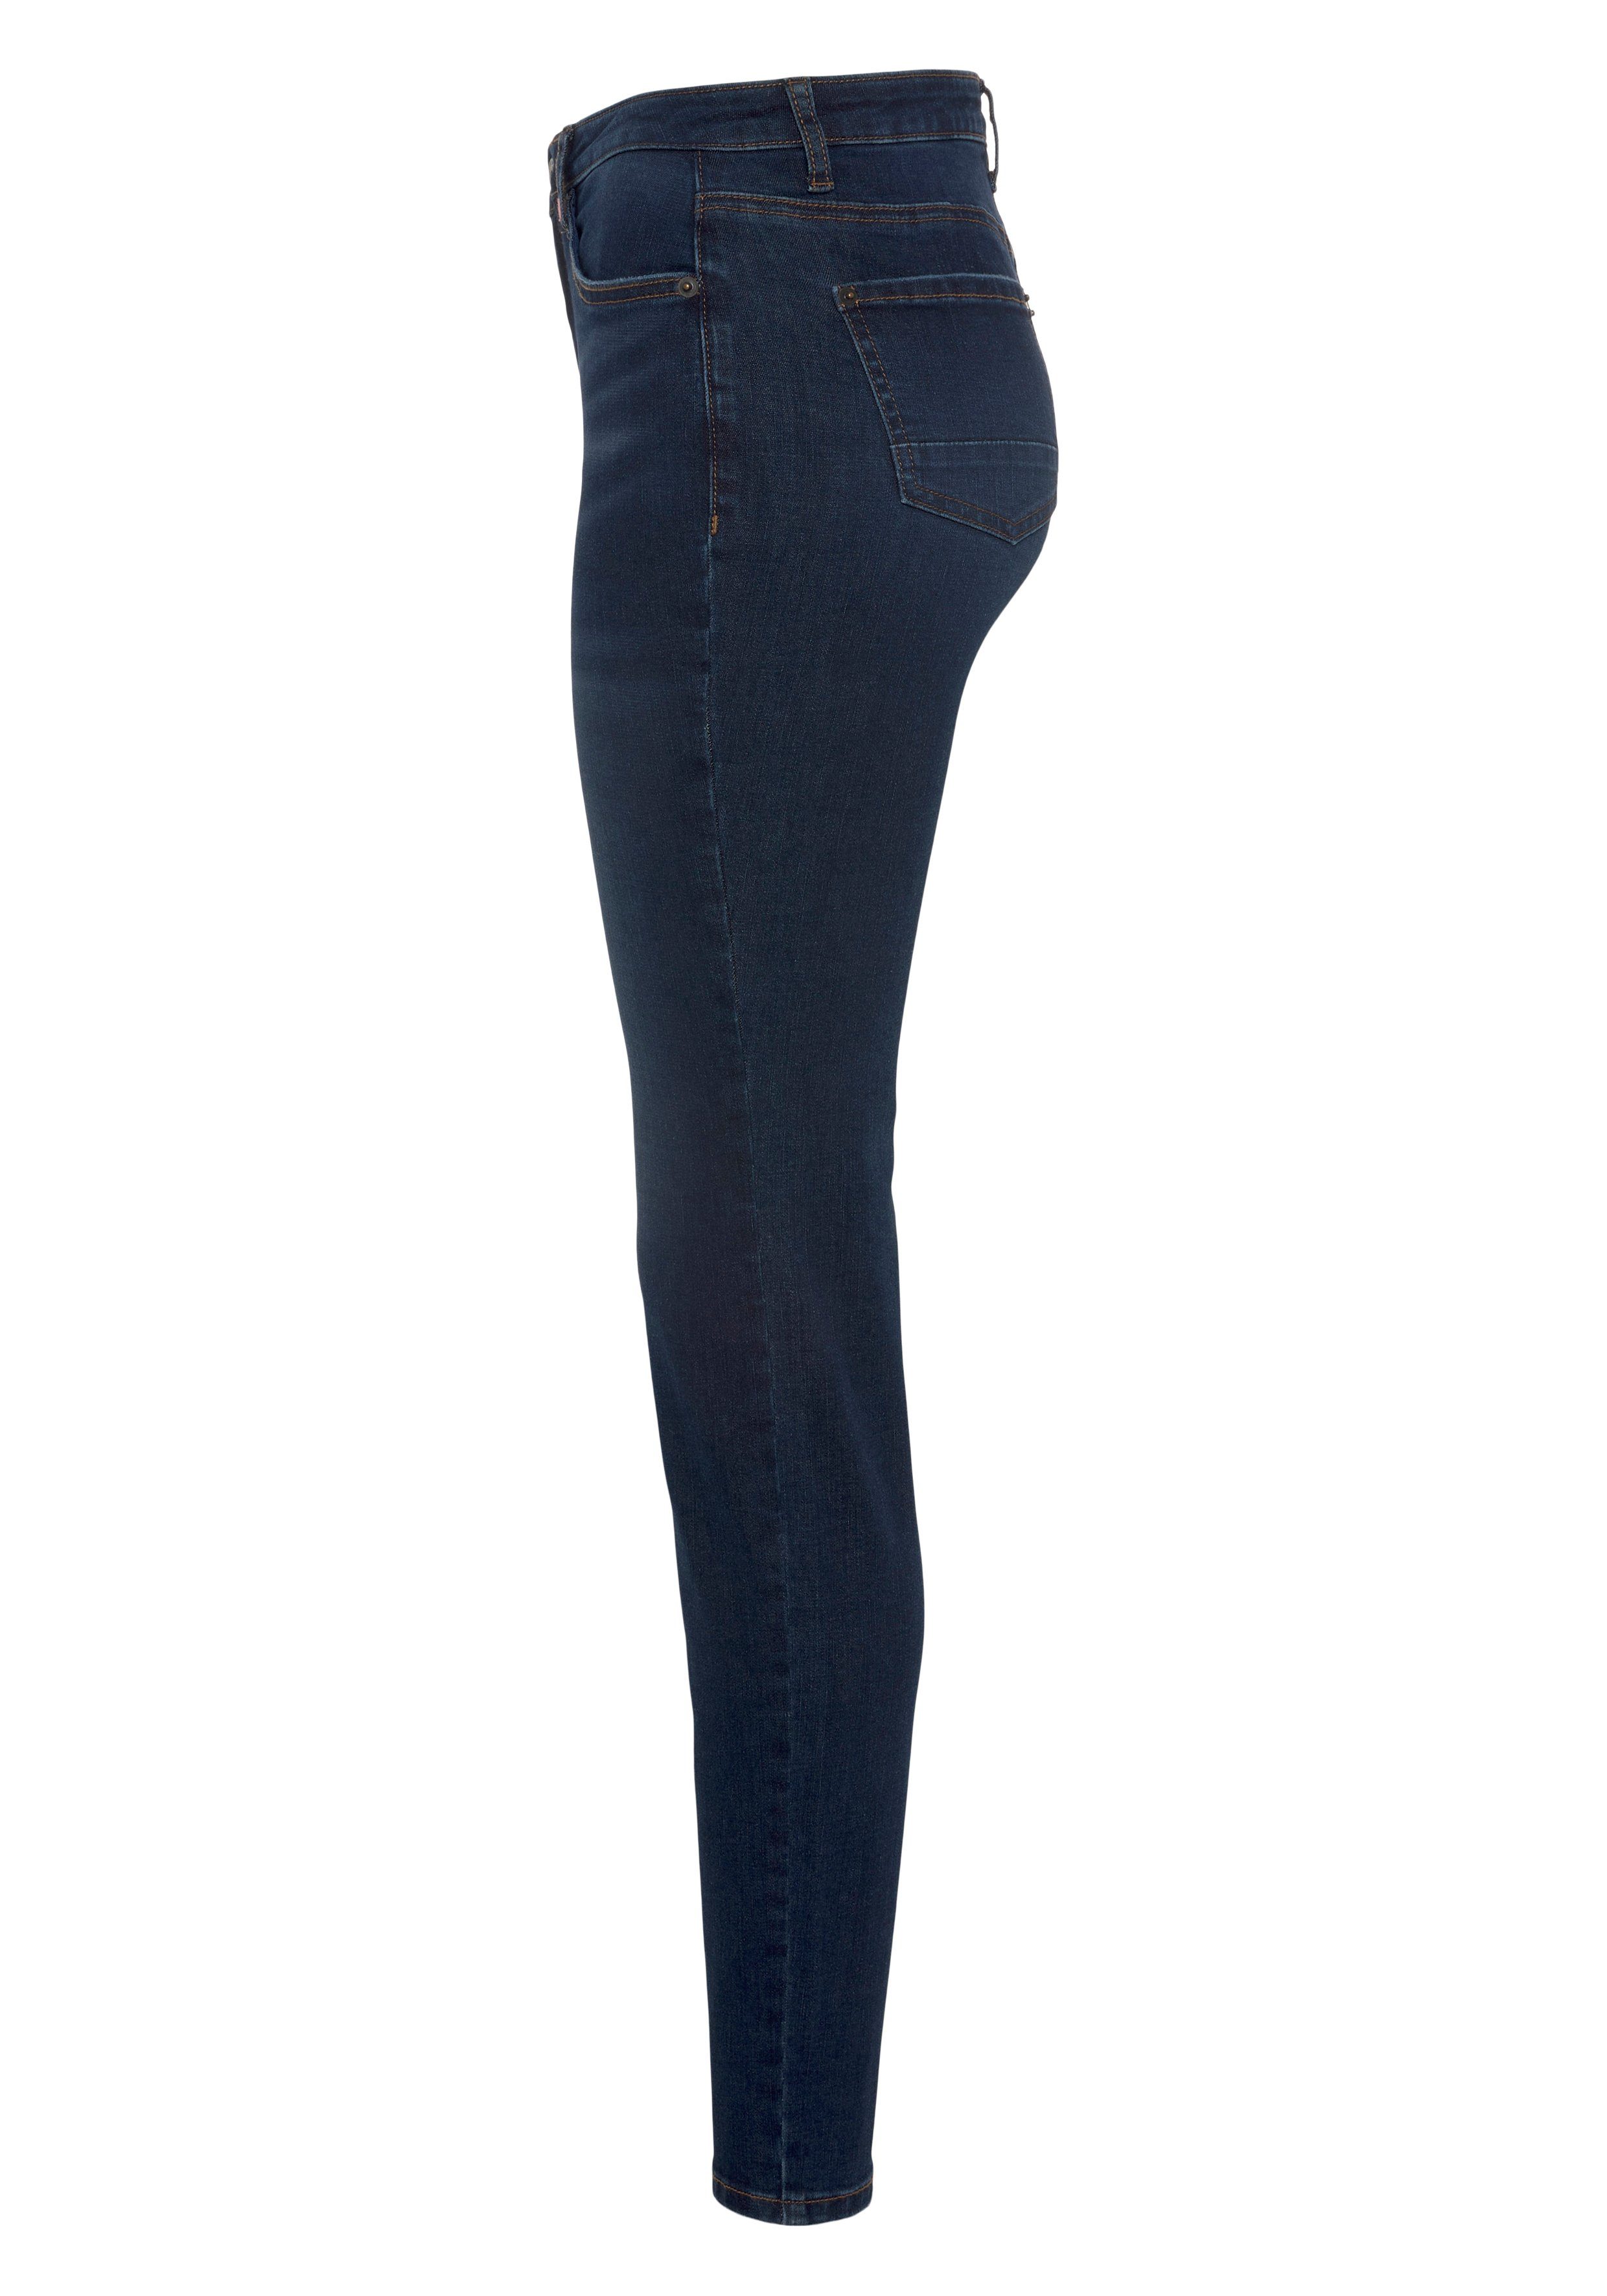 & NEUE used Slim-Fit High-waist-Jeans NolaAK dark Kickin blue used Alife KOLLEKTION